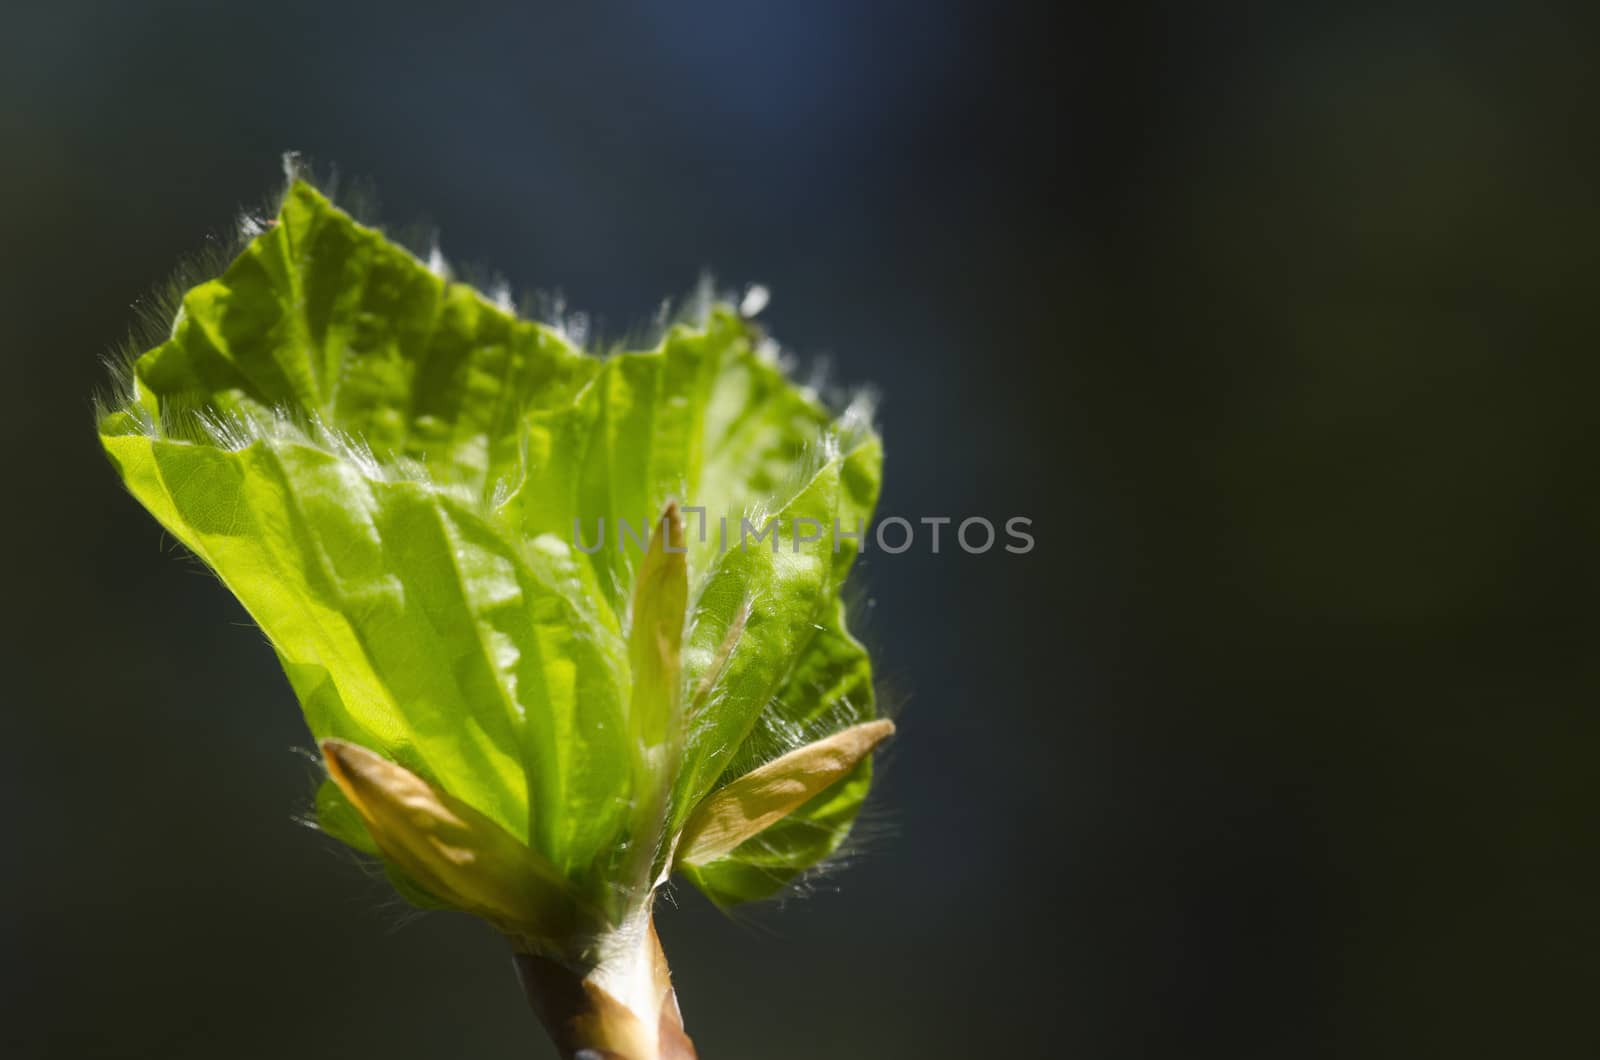 Green Leaf Background Beech Tree by Arrxxx